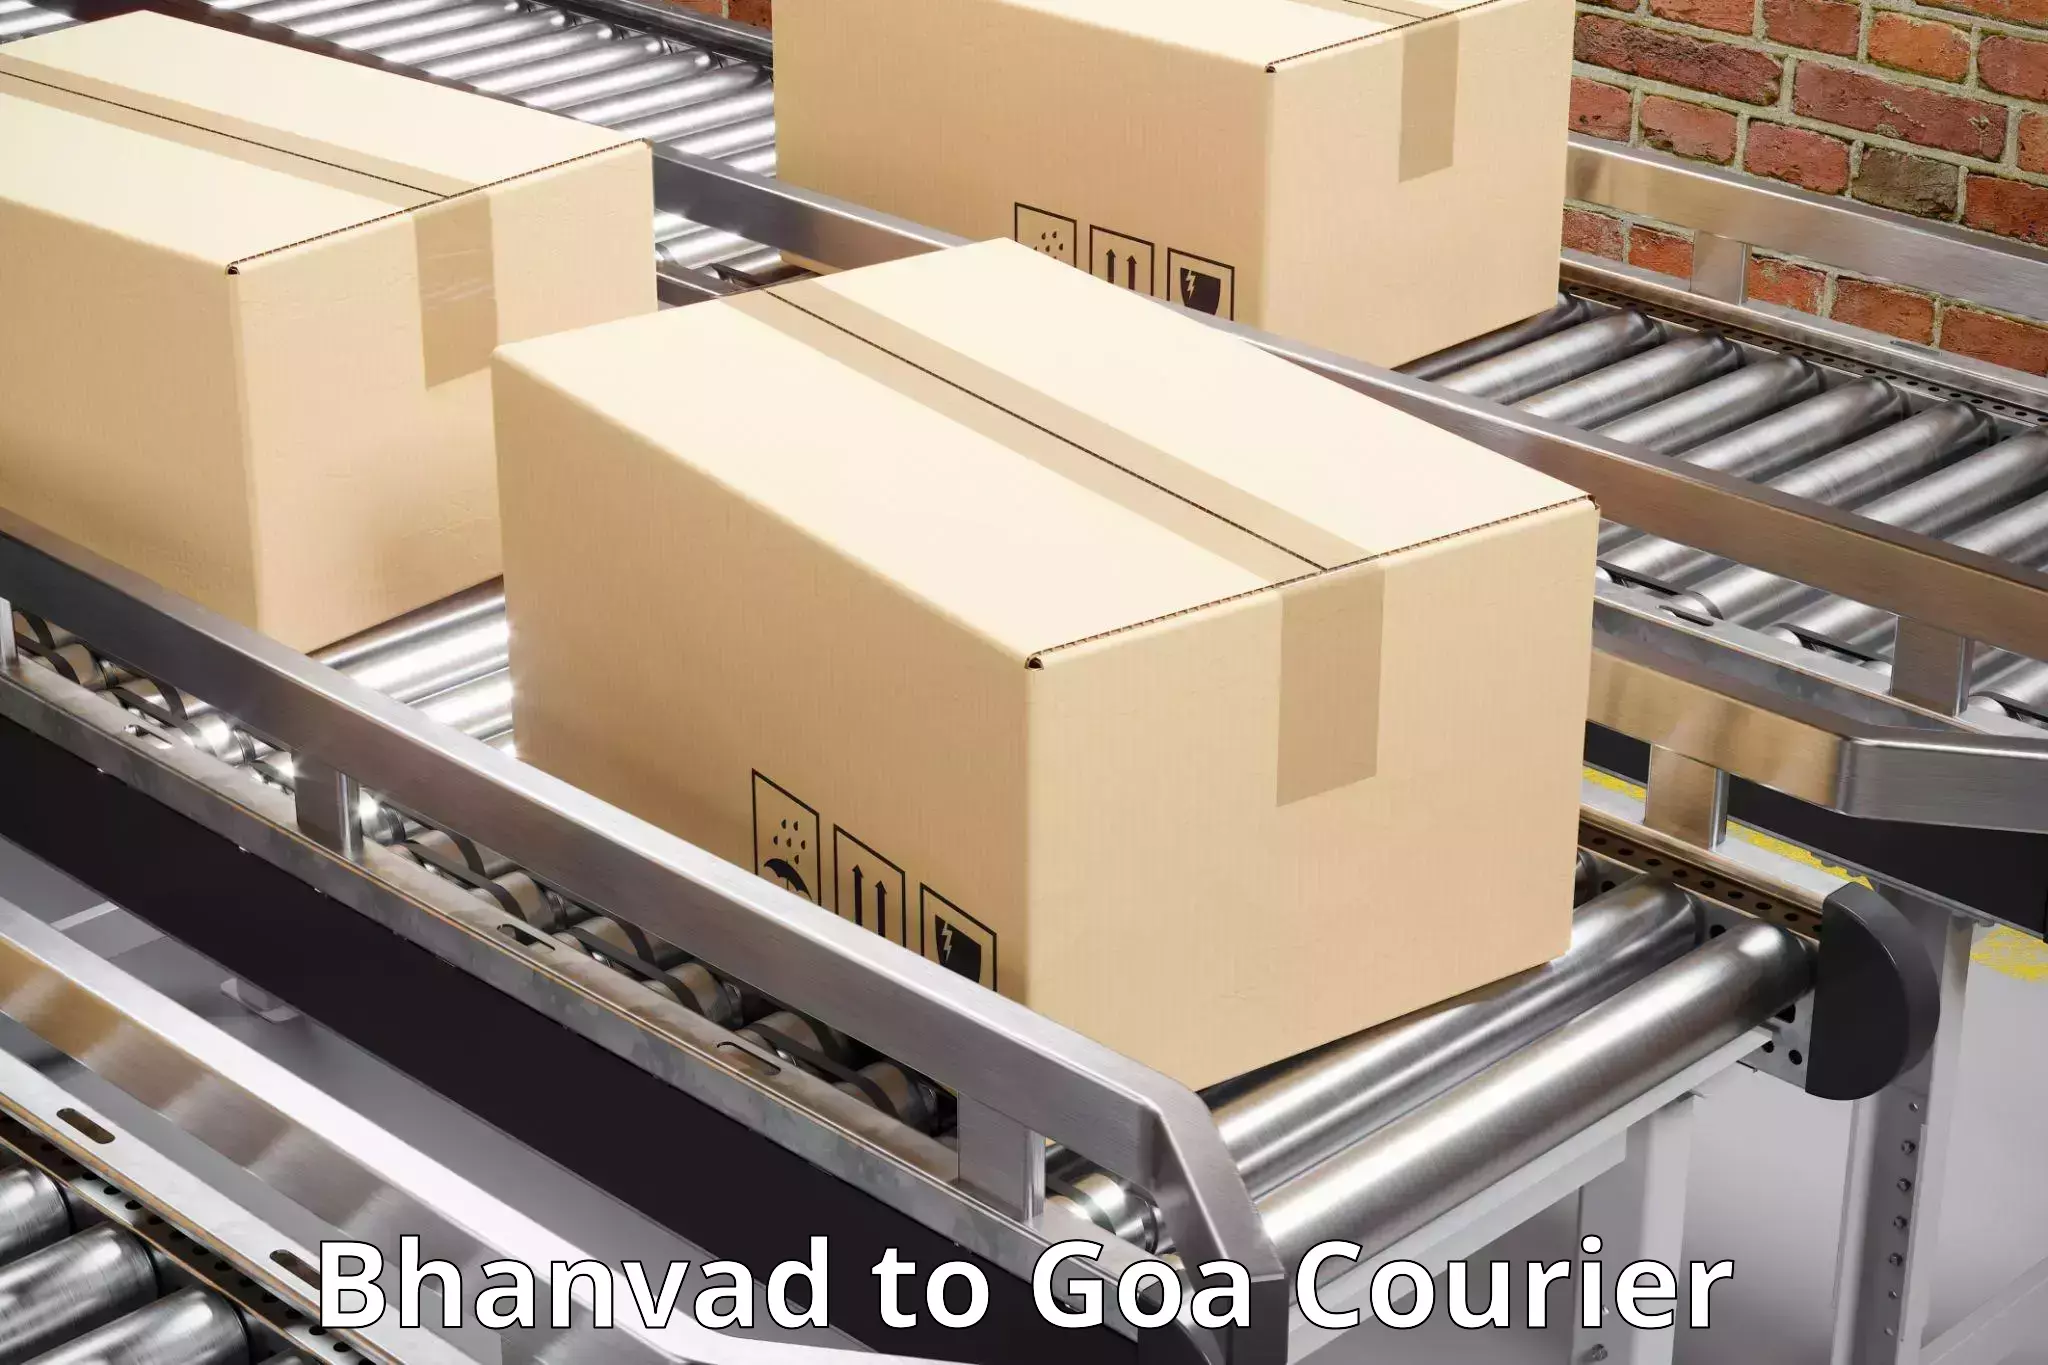 Door-to-door shipping in Bhanvad to Vasco da Gama